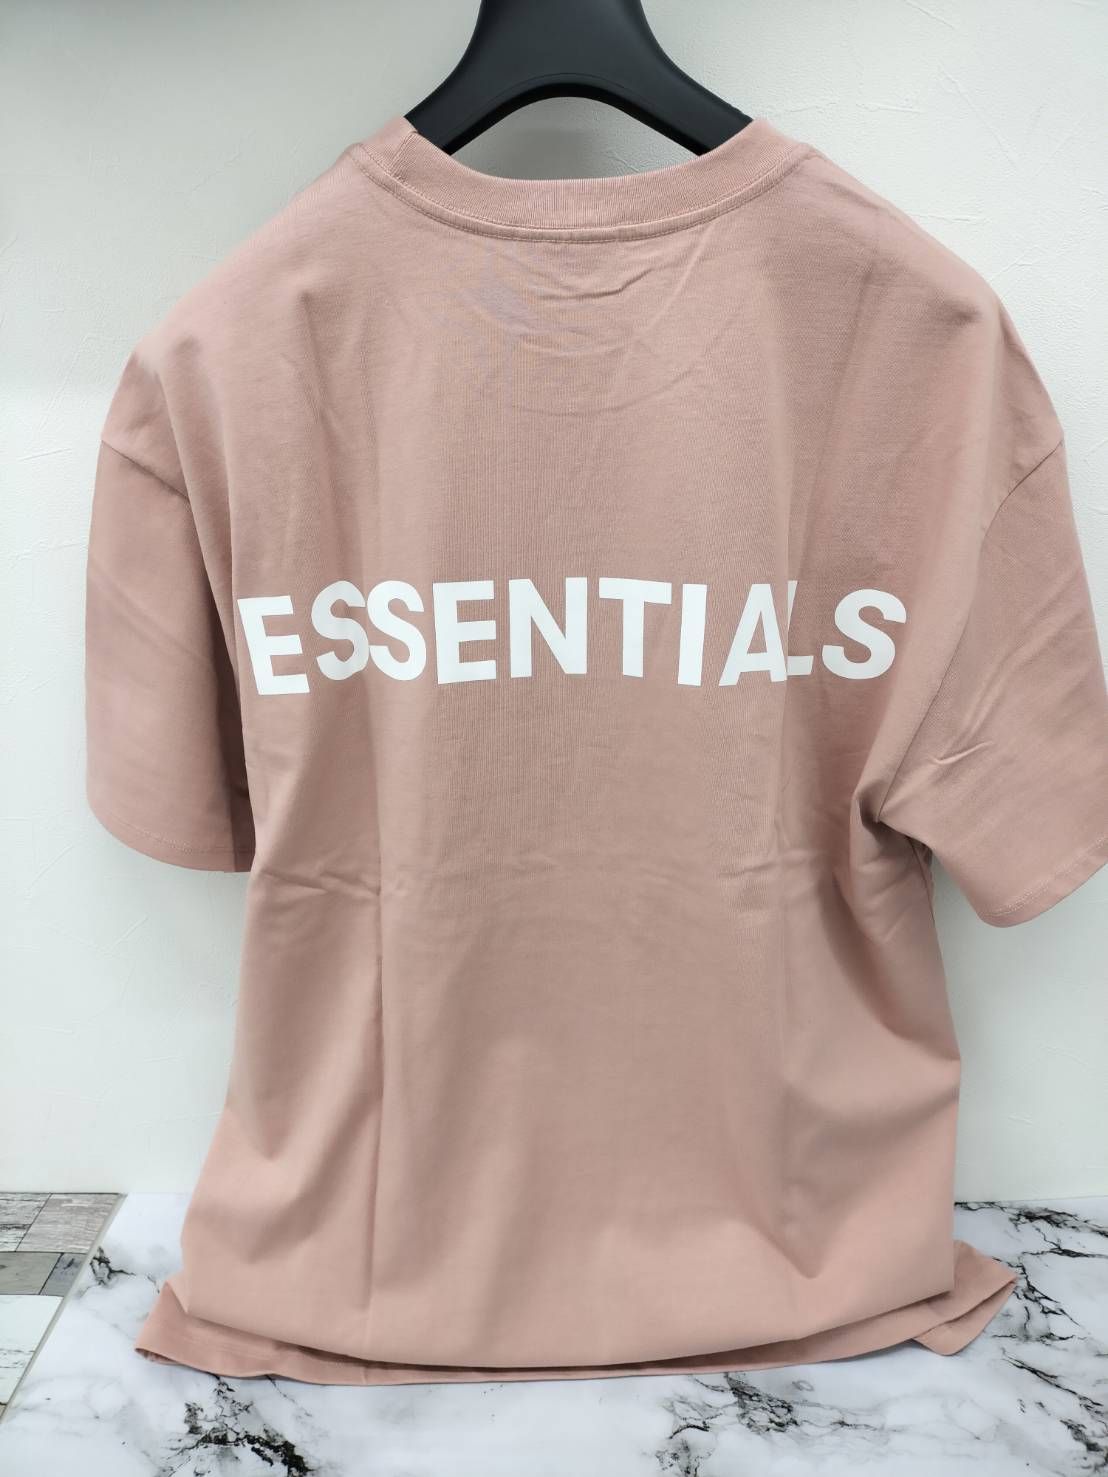 FOG Essentials ピンク Tシャツ XL fear of god - メルカリ